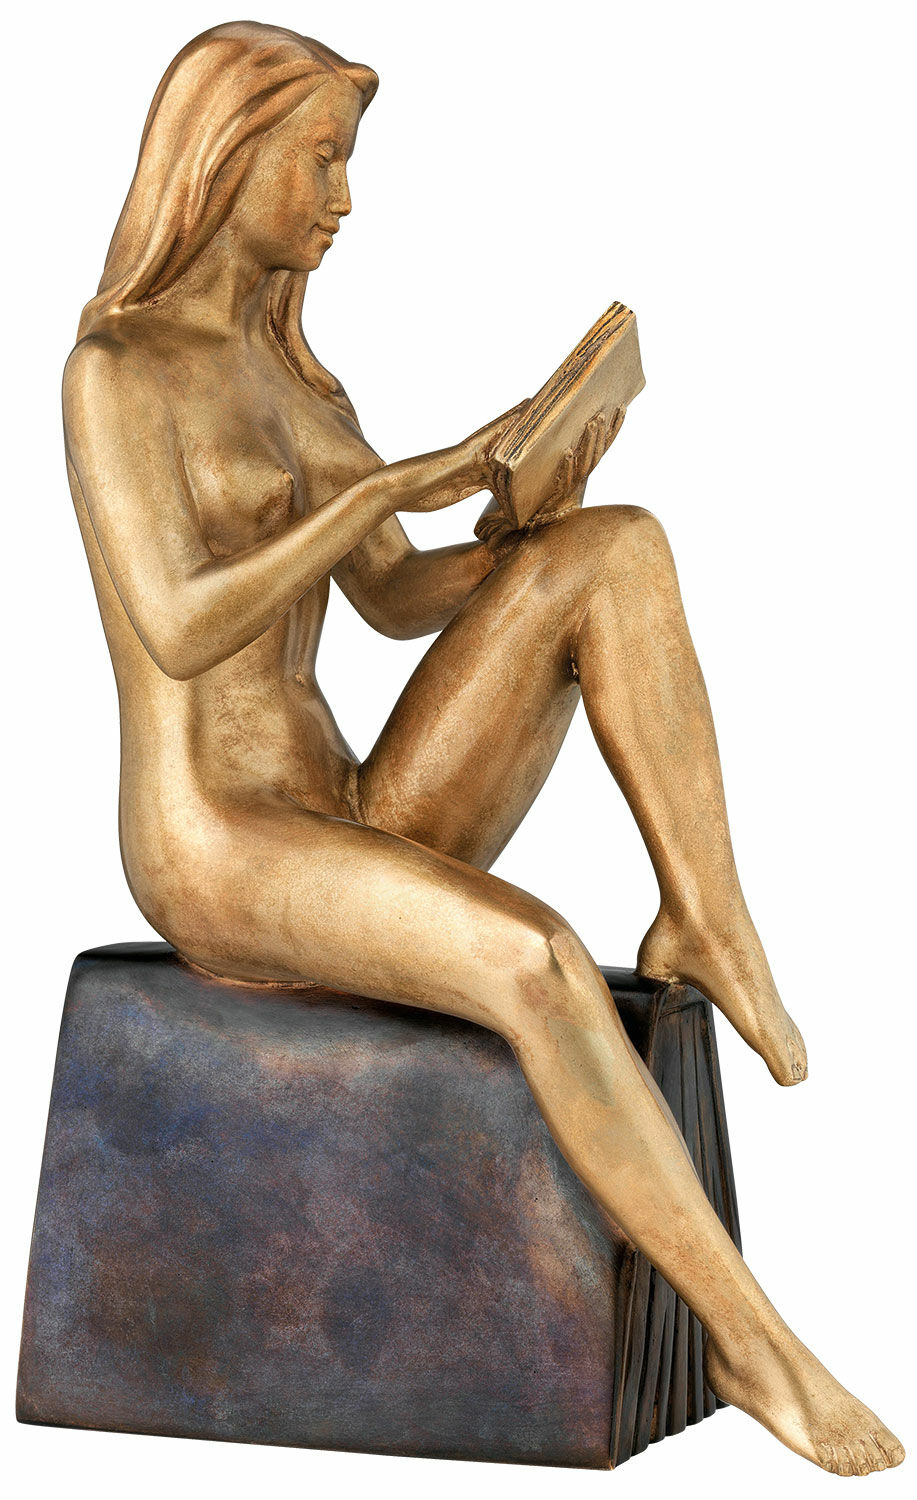 Skulptur "Lesende", Bronze von Richard Senoner